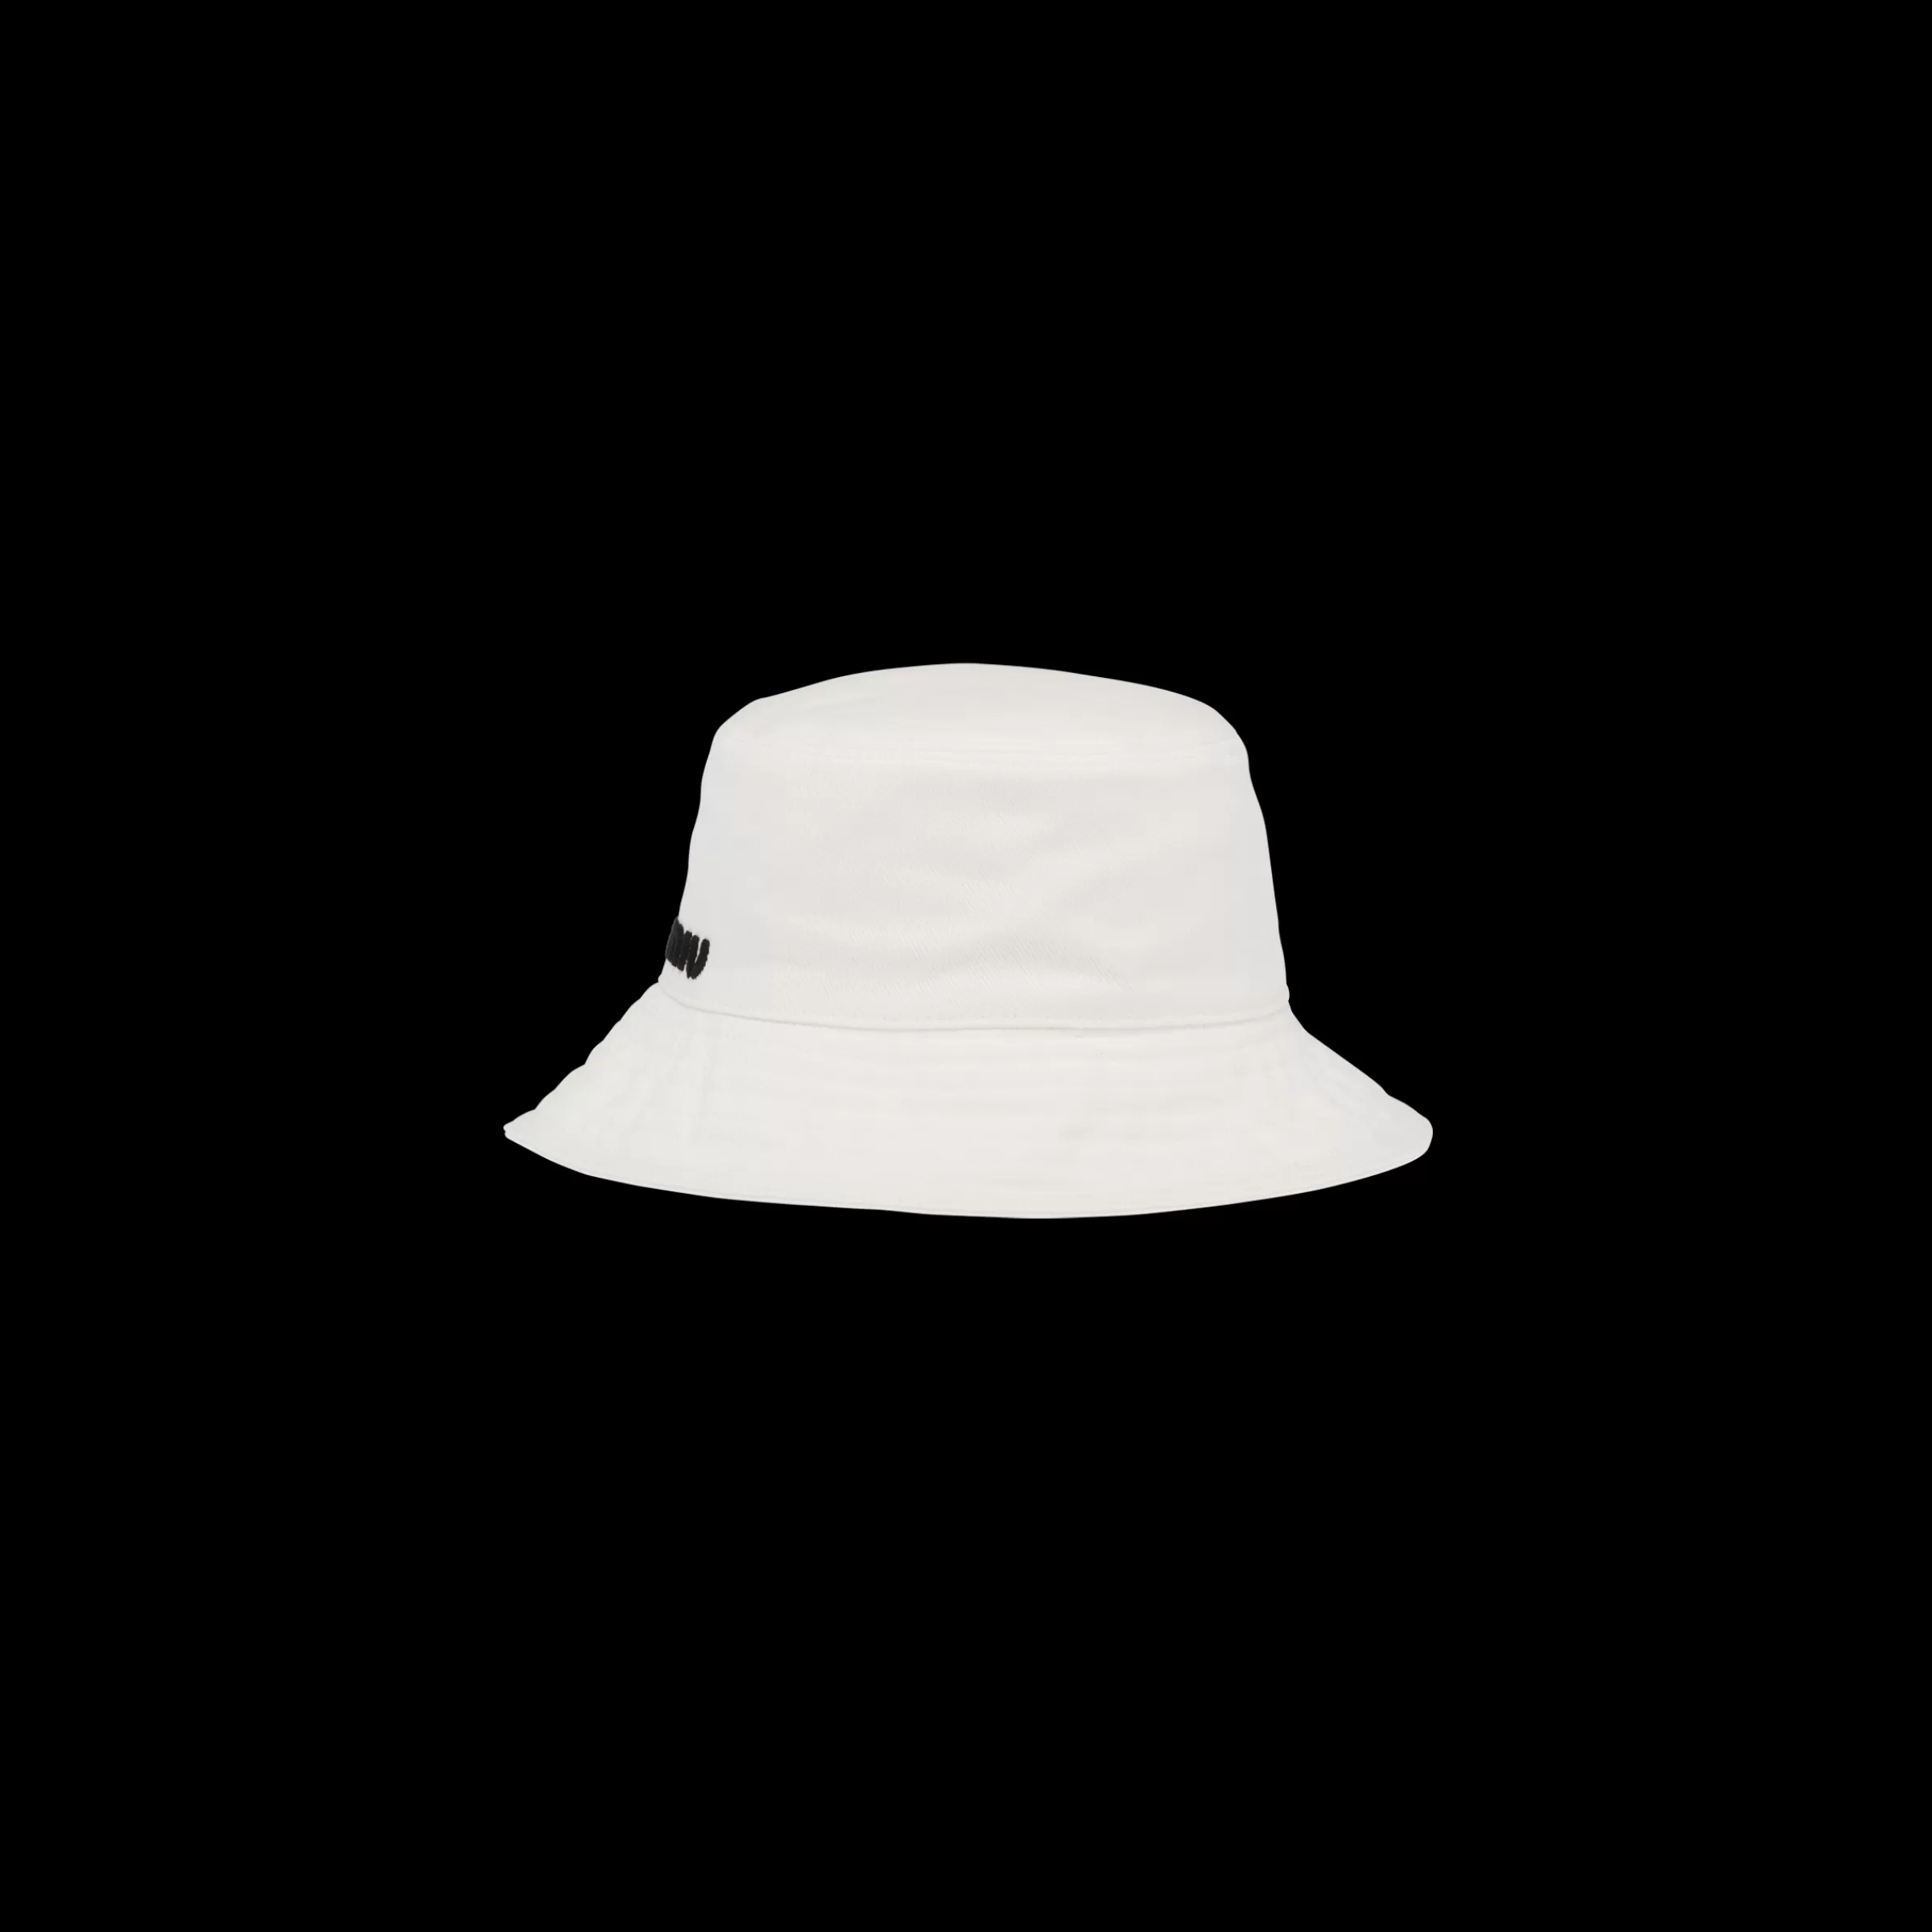 Miu Miu Drill Bucket Hat |